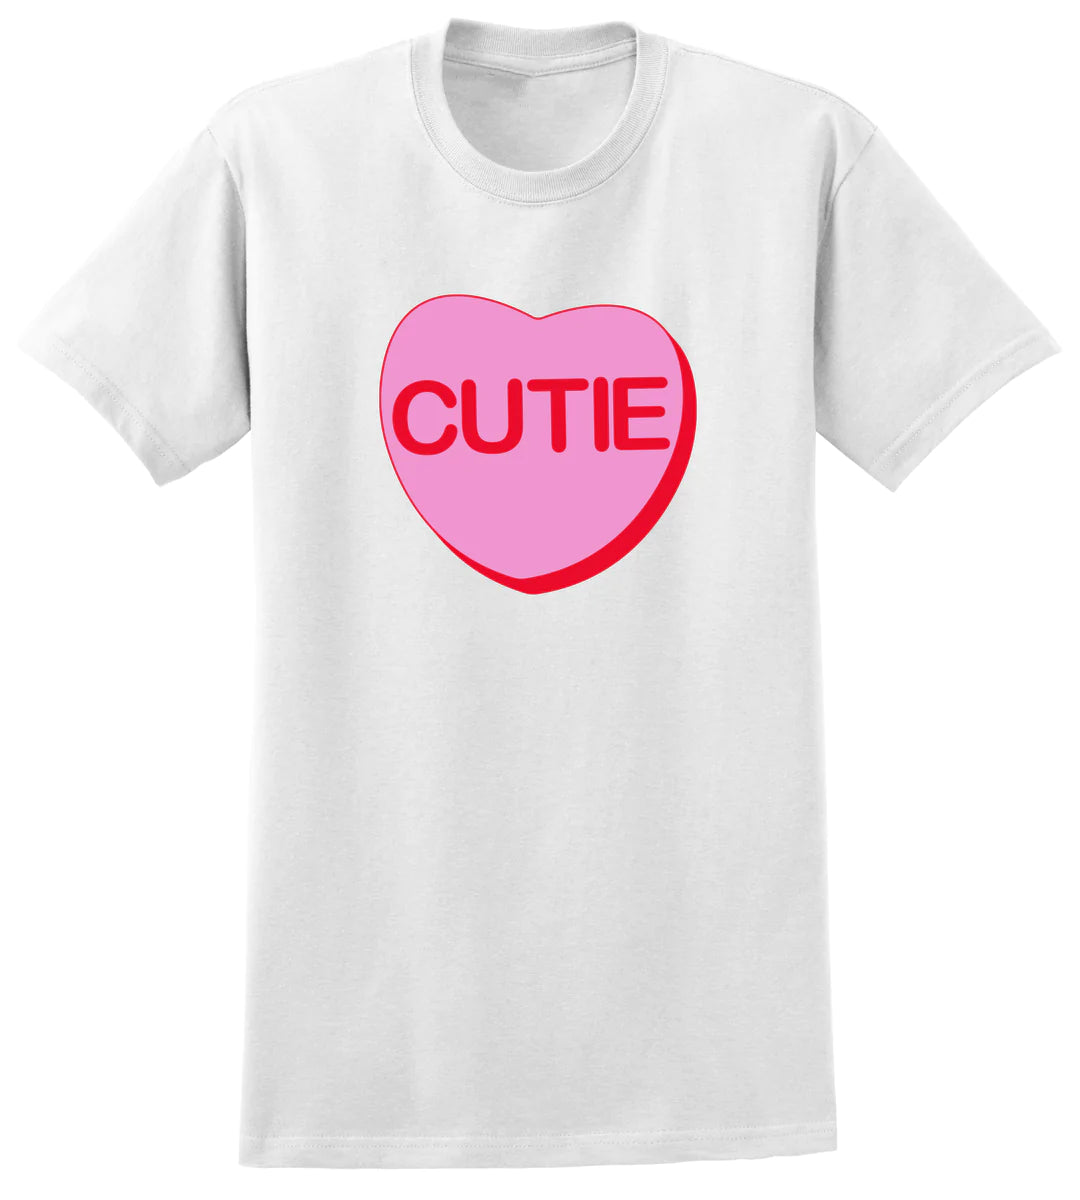 Puffy Cutie Heart on Short Sleeve Shirt